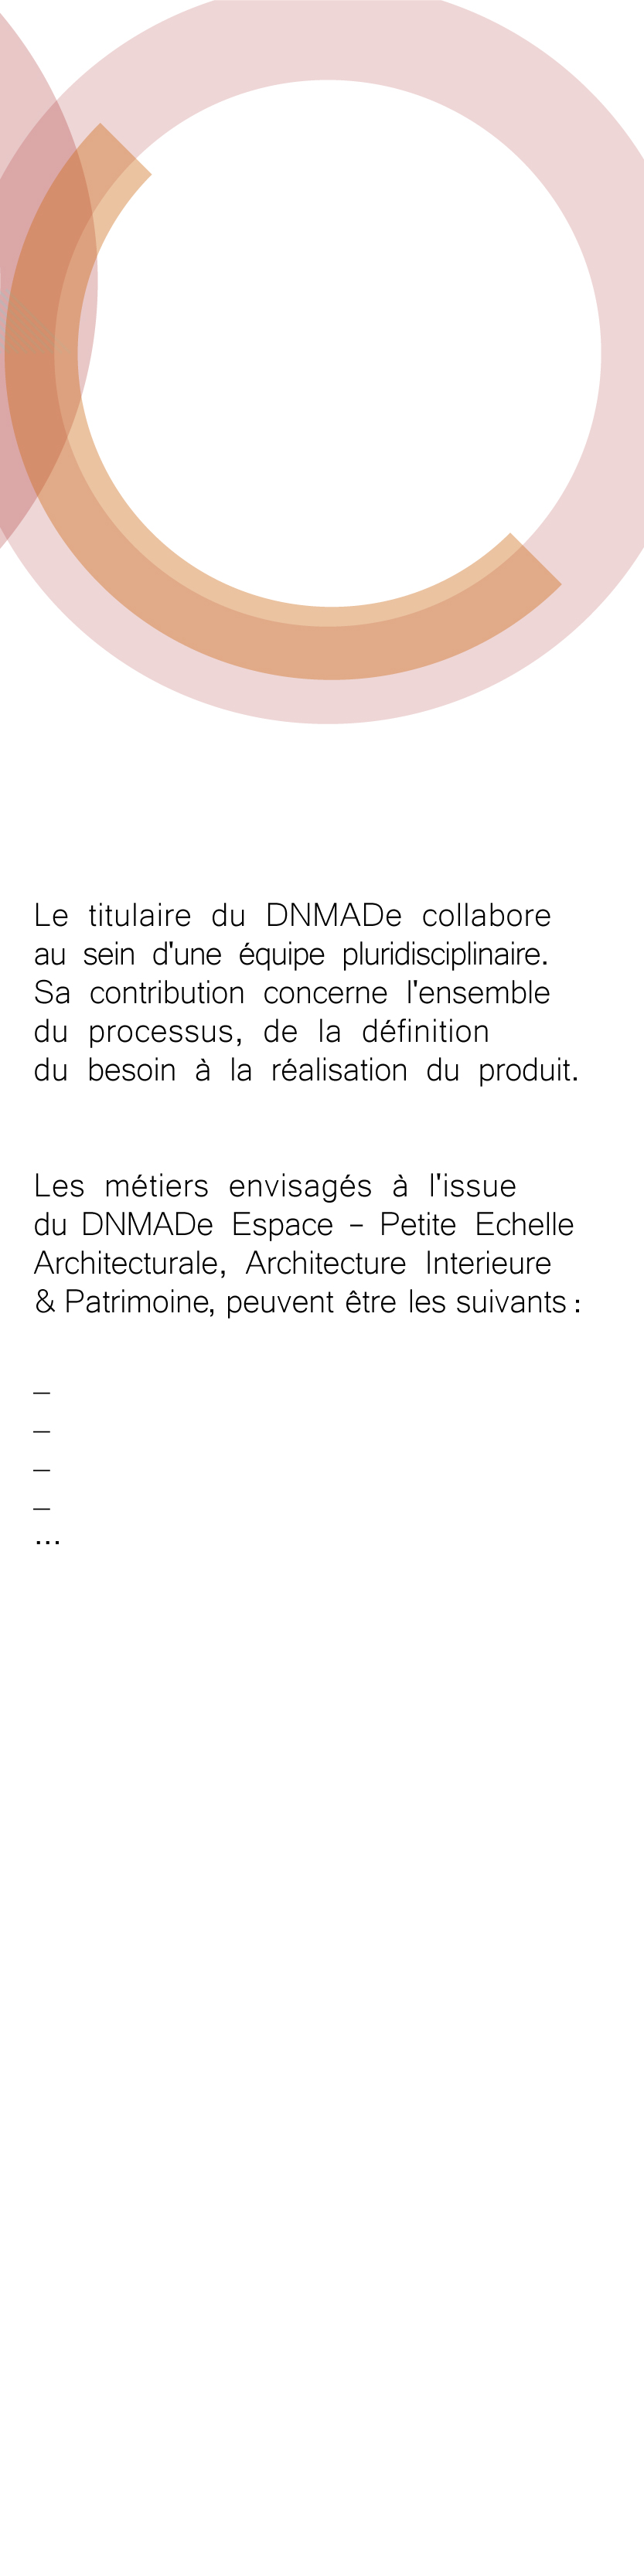 StOmer_ArchitectureInterieurePatrimoine_D